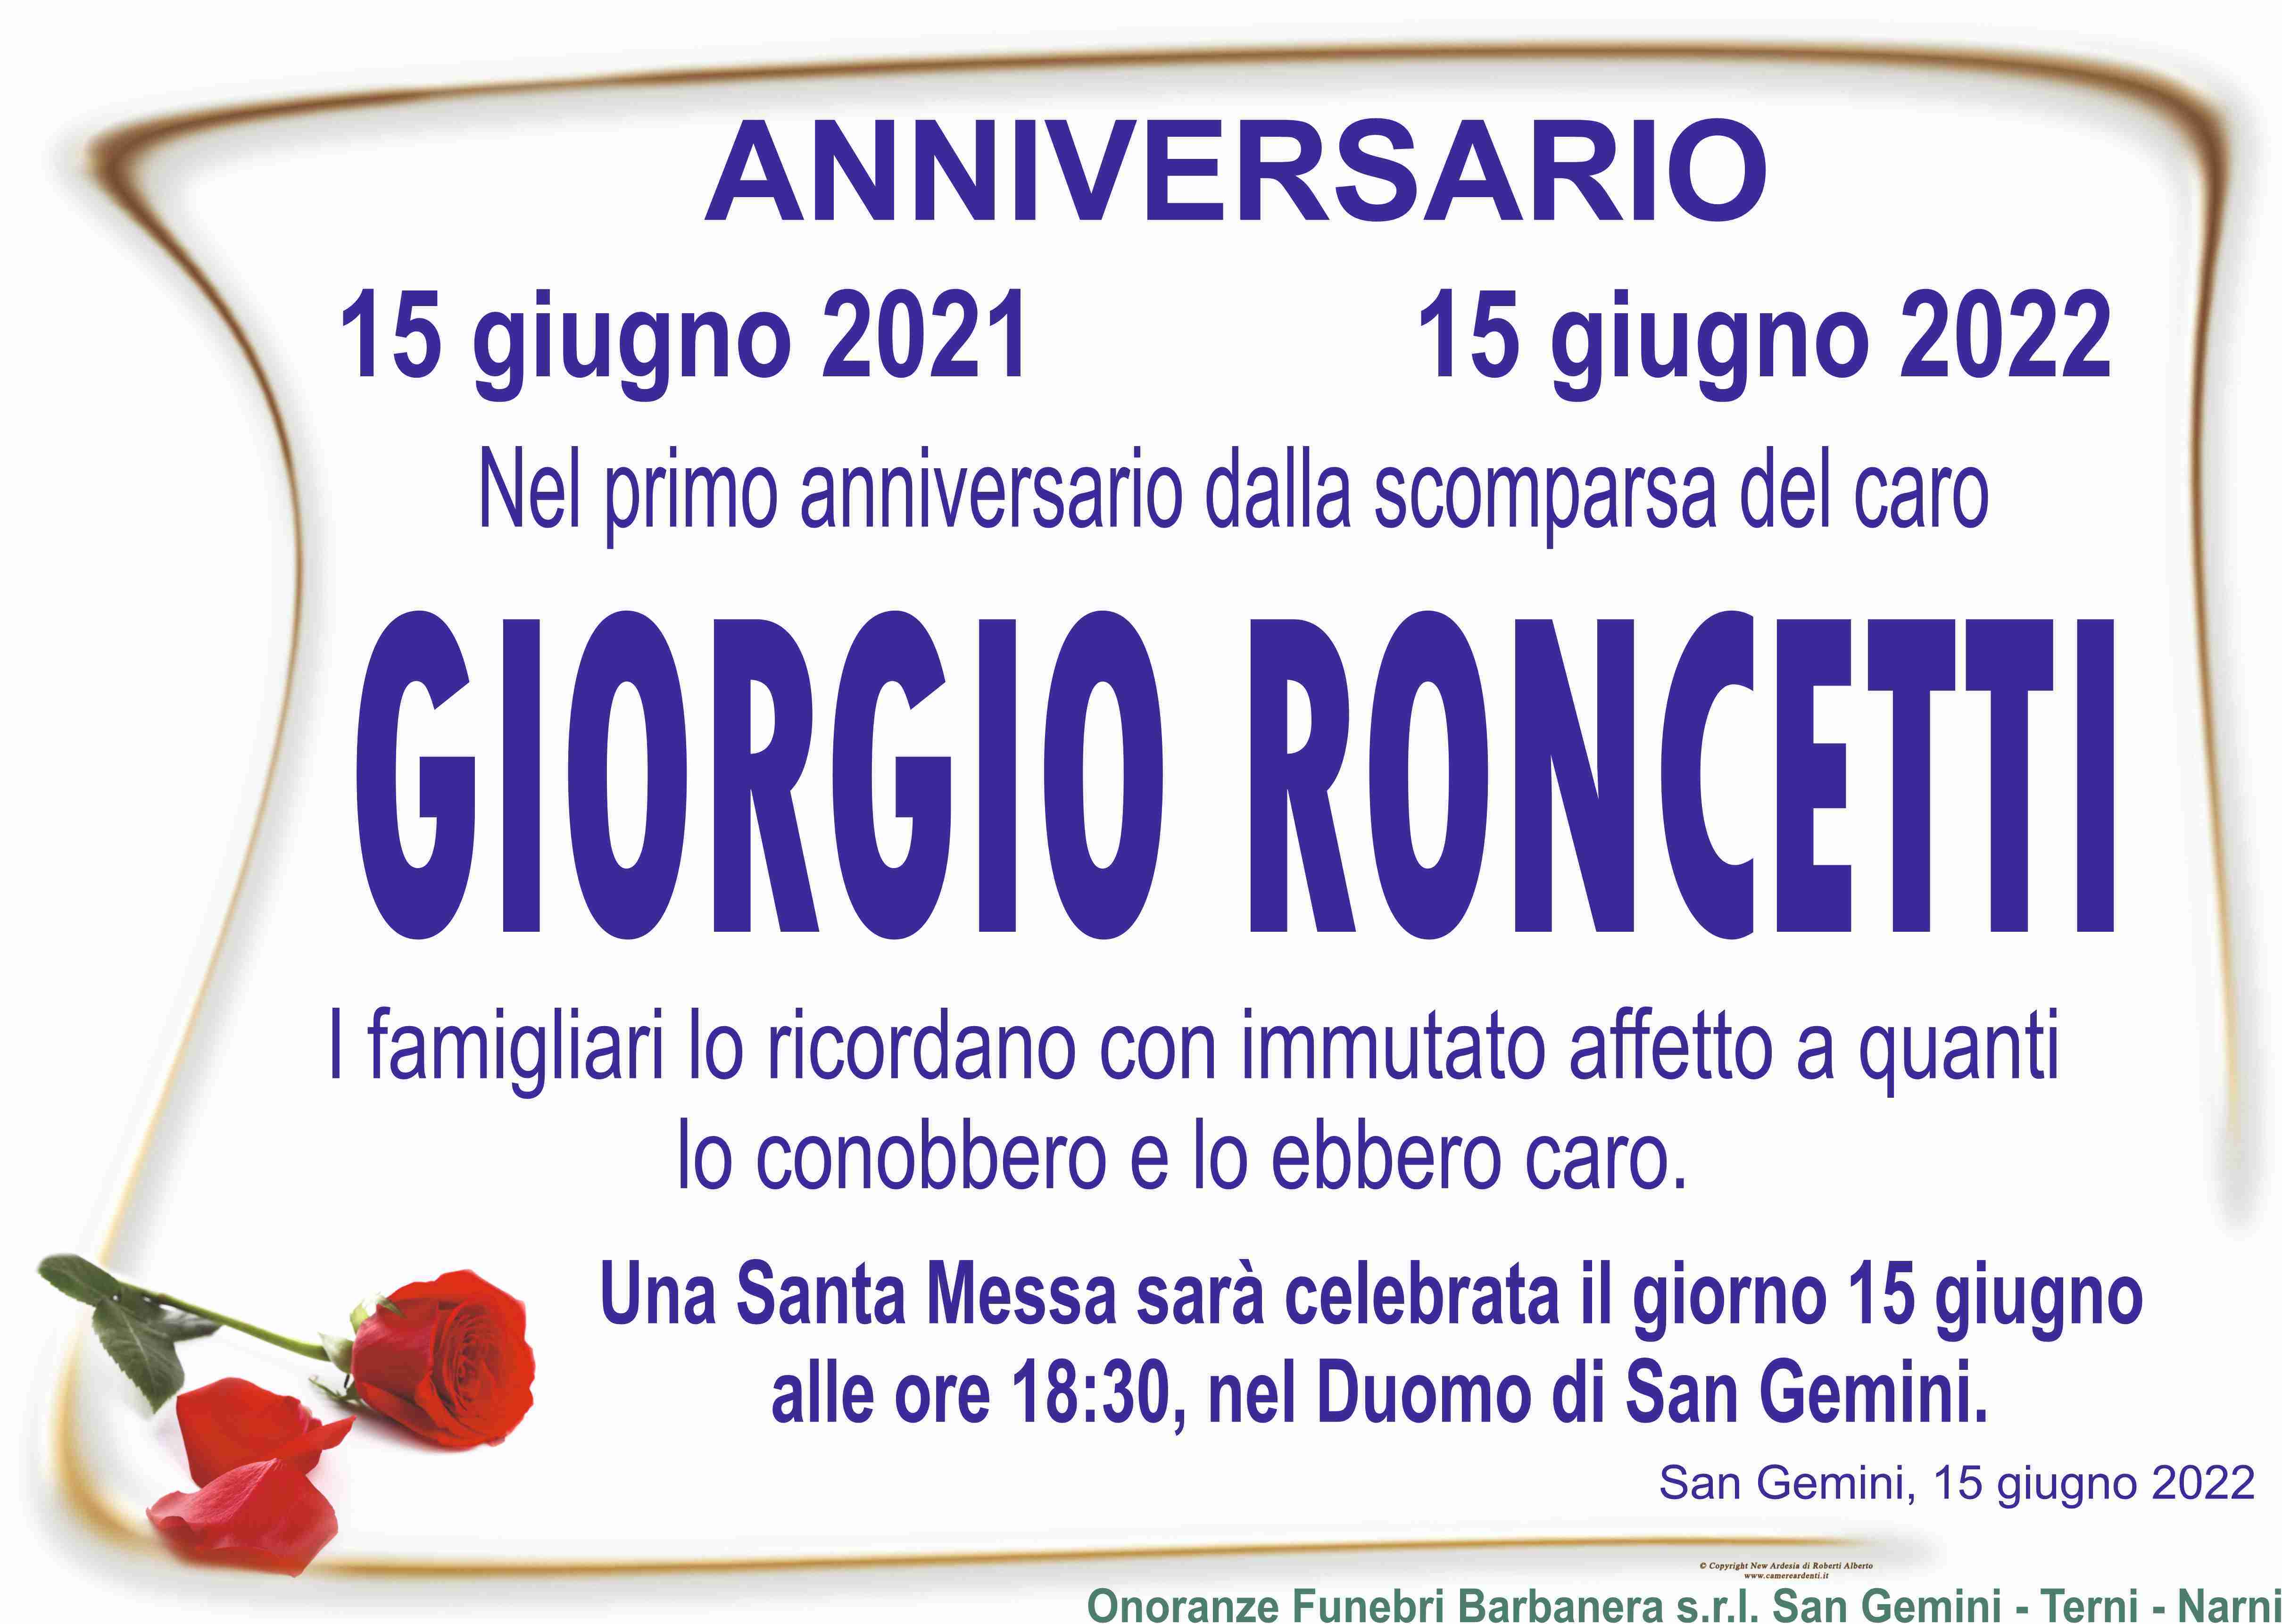 Giorgio Roncetti